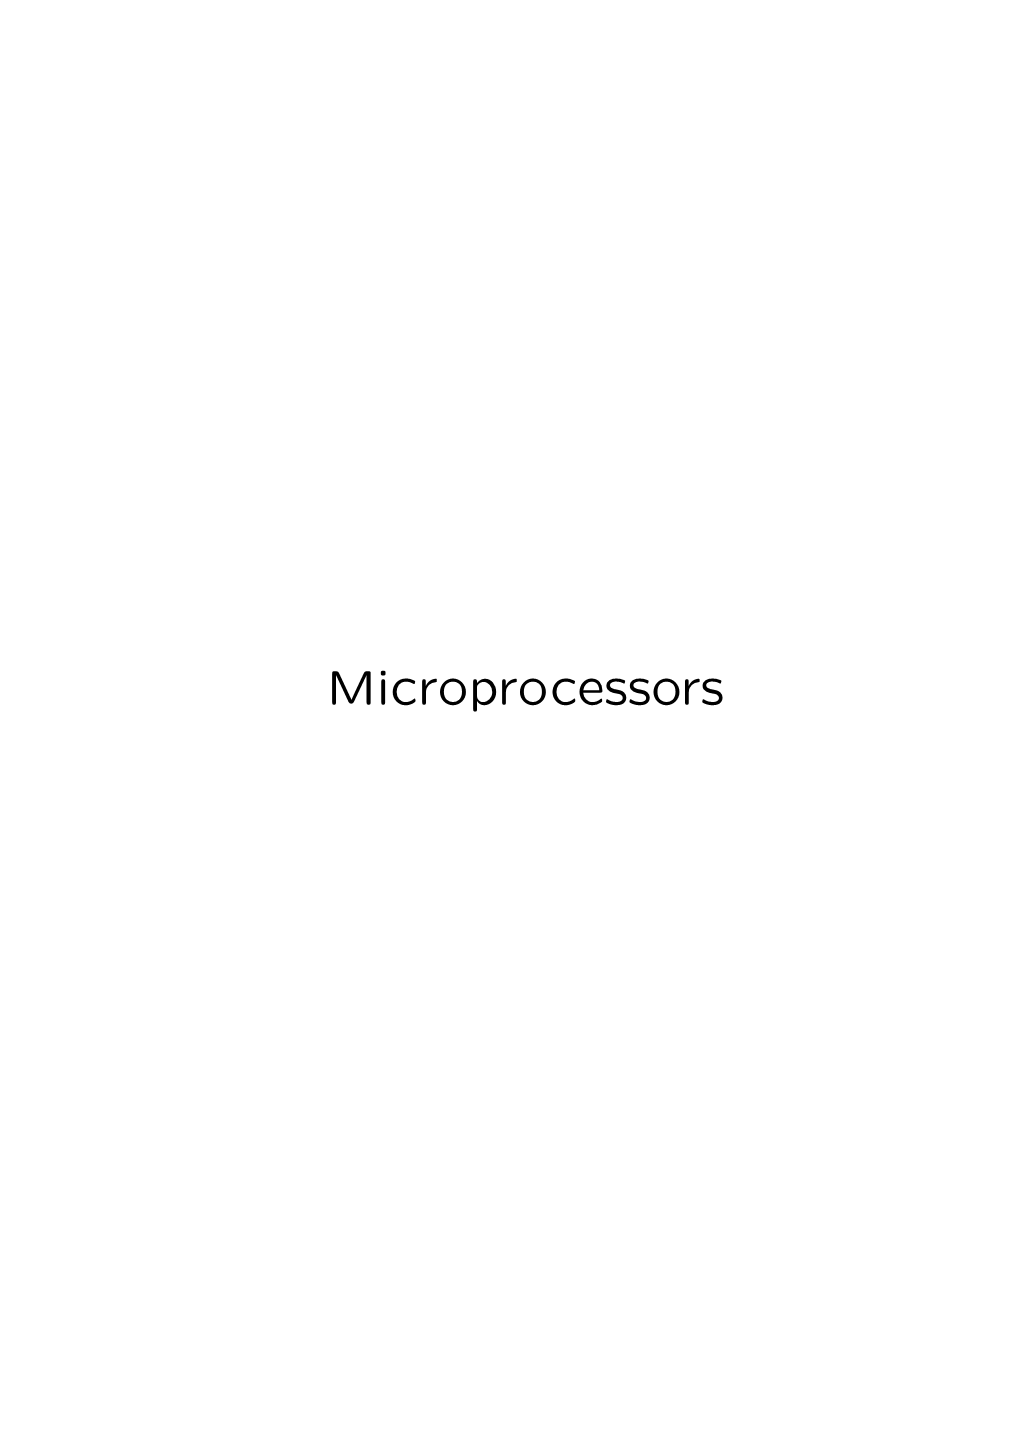 Microprocessors Von Neumann Architecture